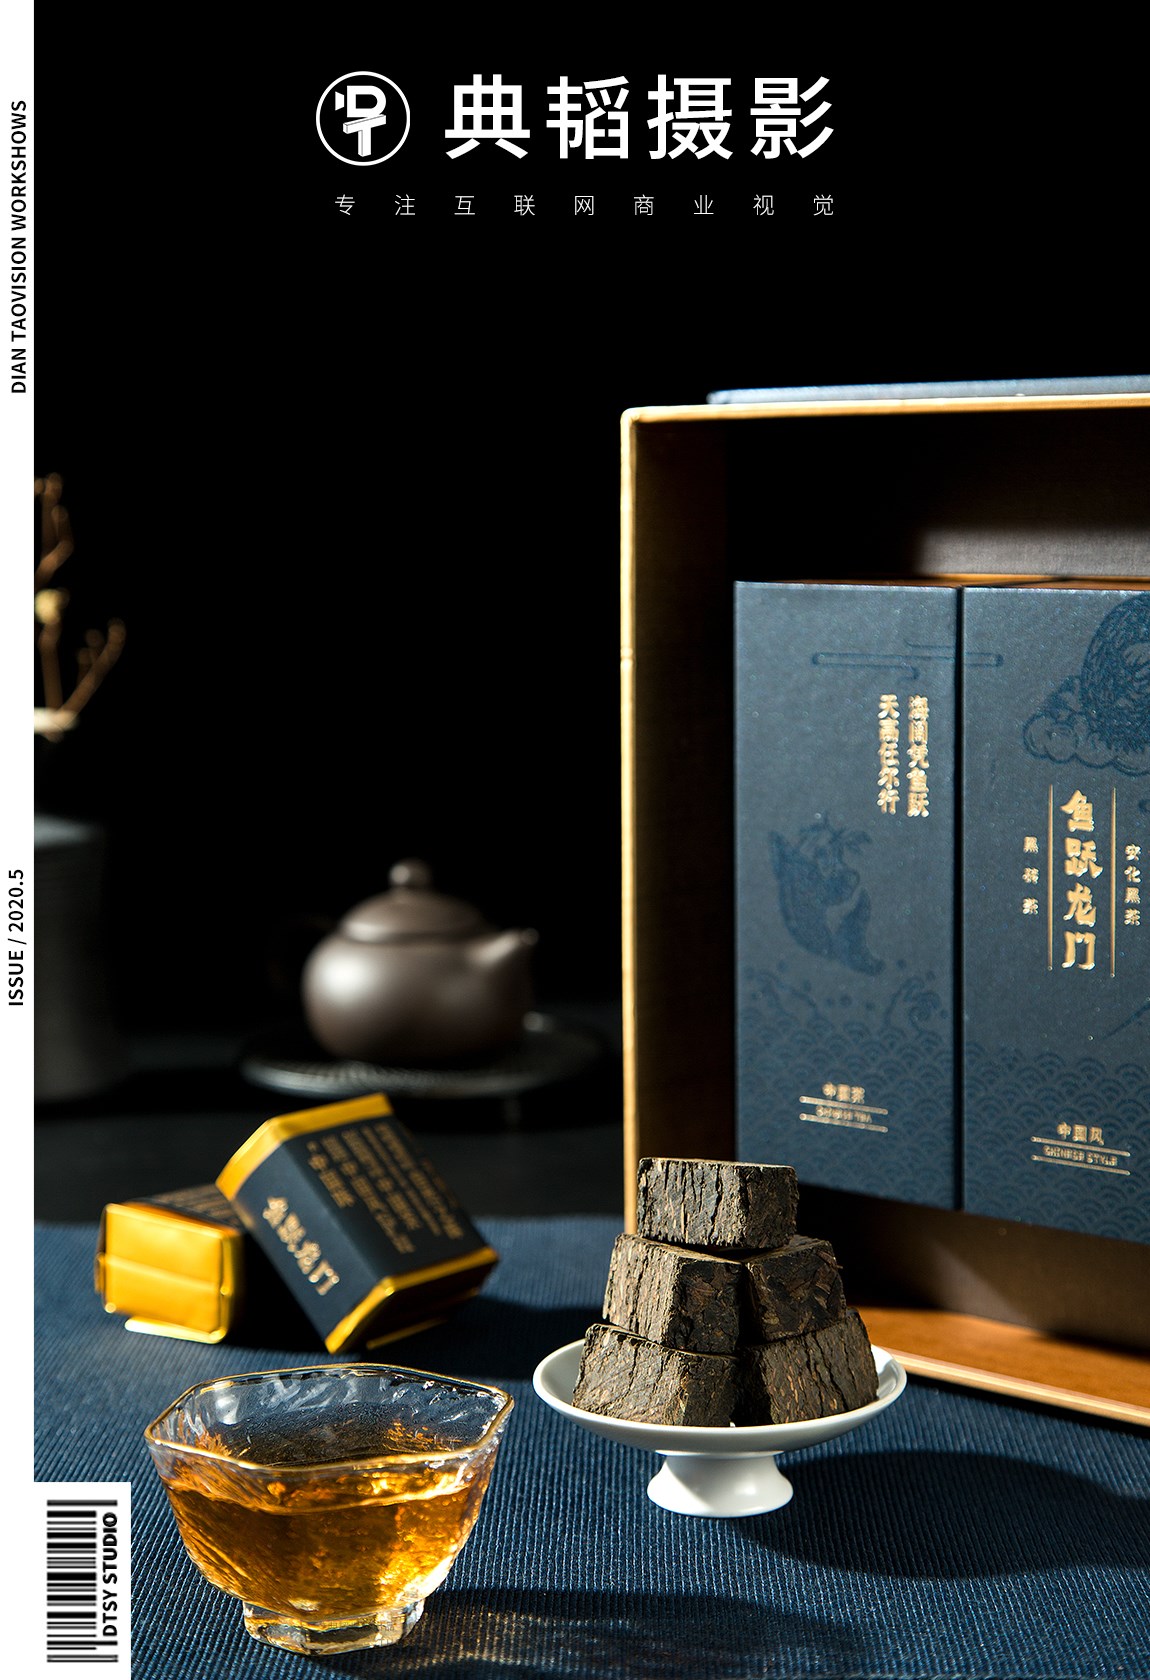 长沙典韬摄影 | 安化黑茶茶叶盒子创意拍摄